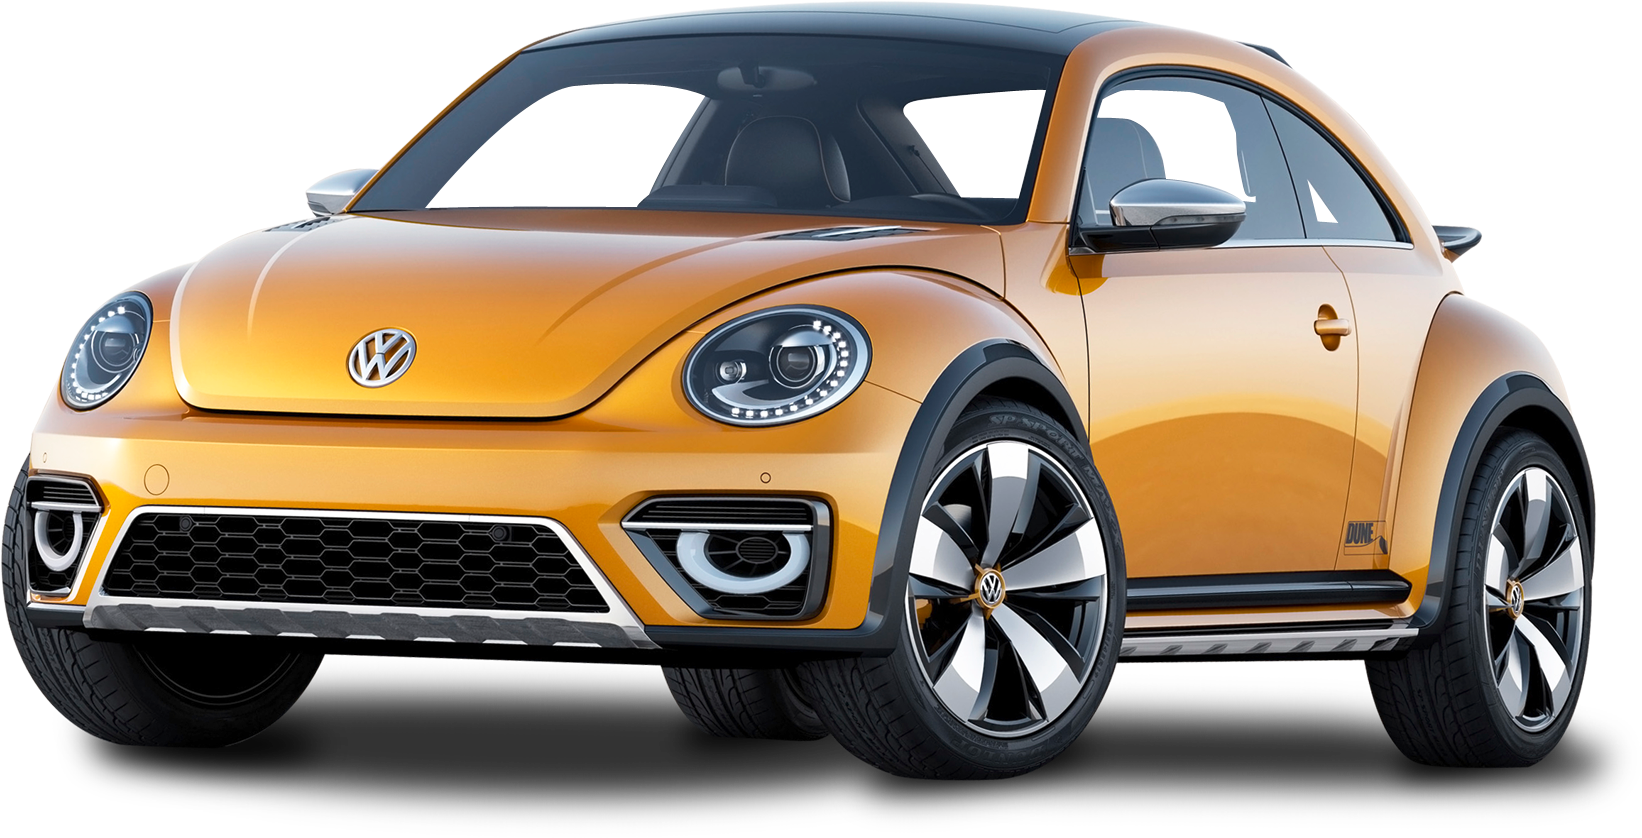 2019 Volkswagen Beetle Suv Clipart (1750x958), Png Download